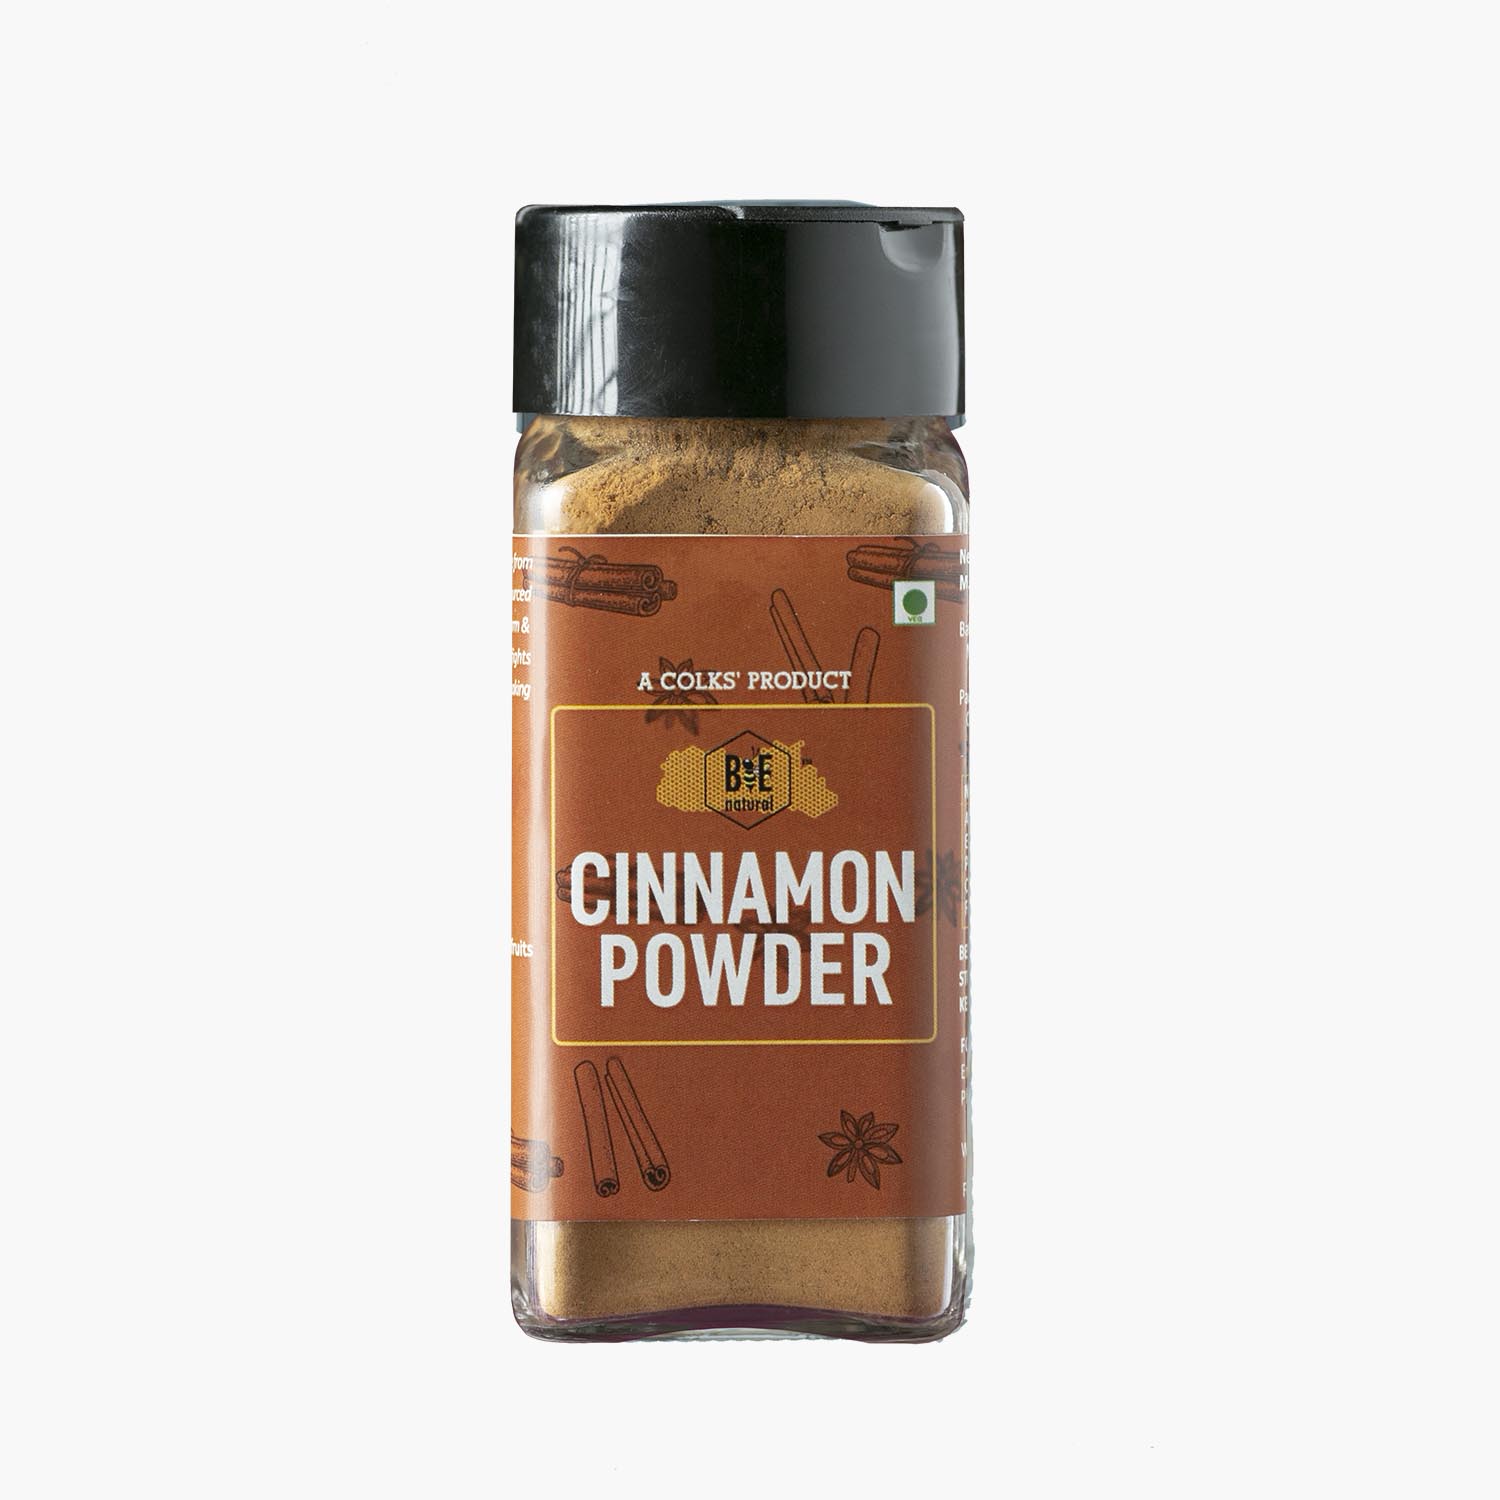 BEE NATURAL Cinnamon Powder 70g